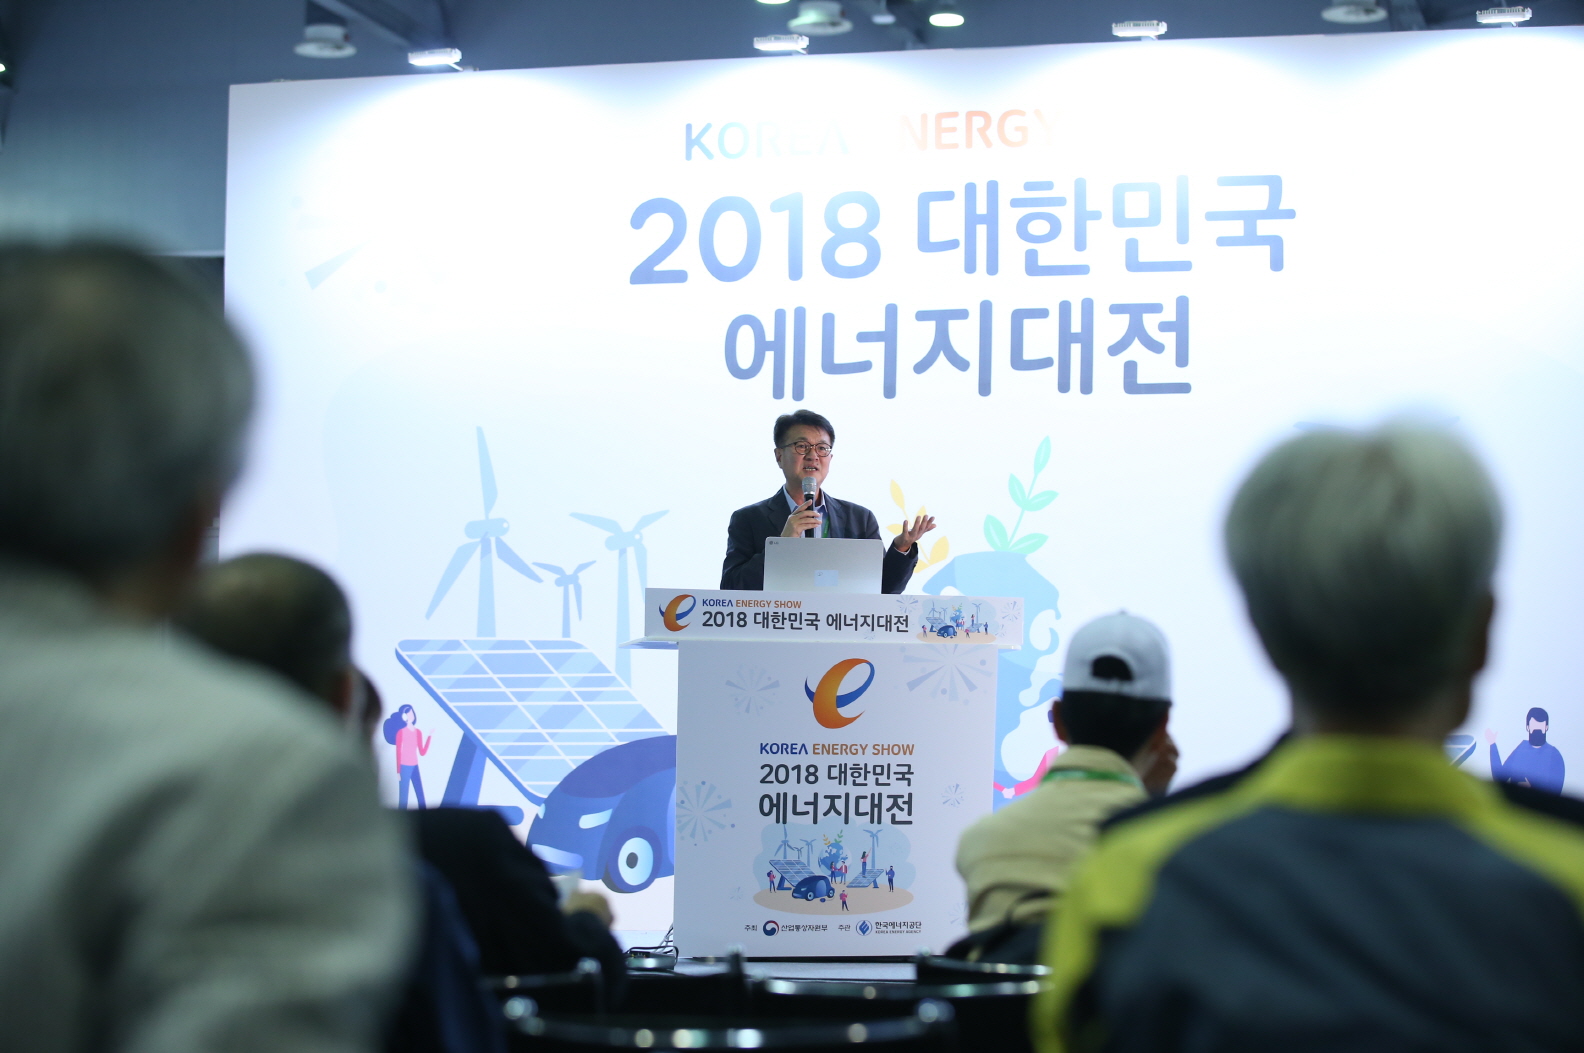 2018 대한민국 에너지대전 신제품 발표회